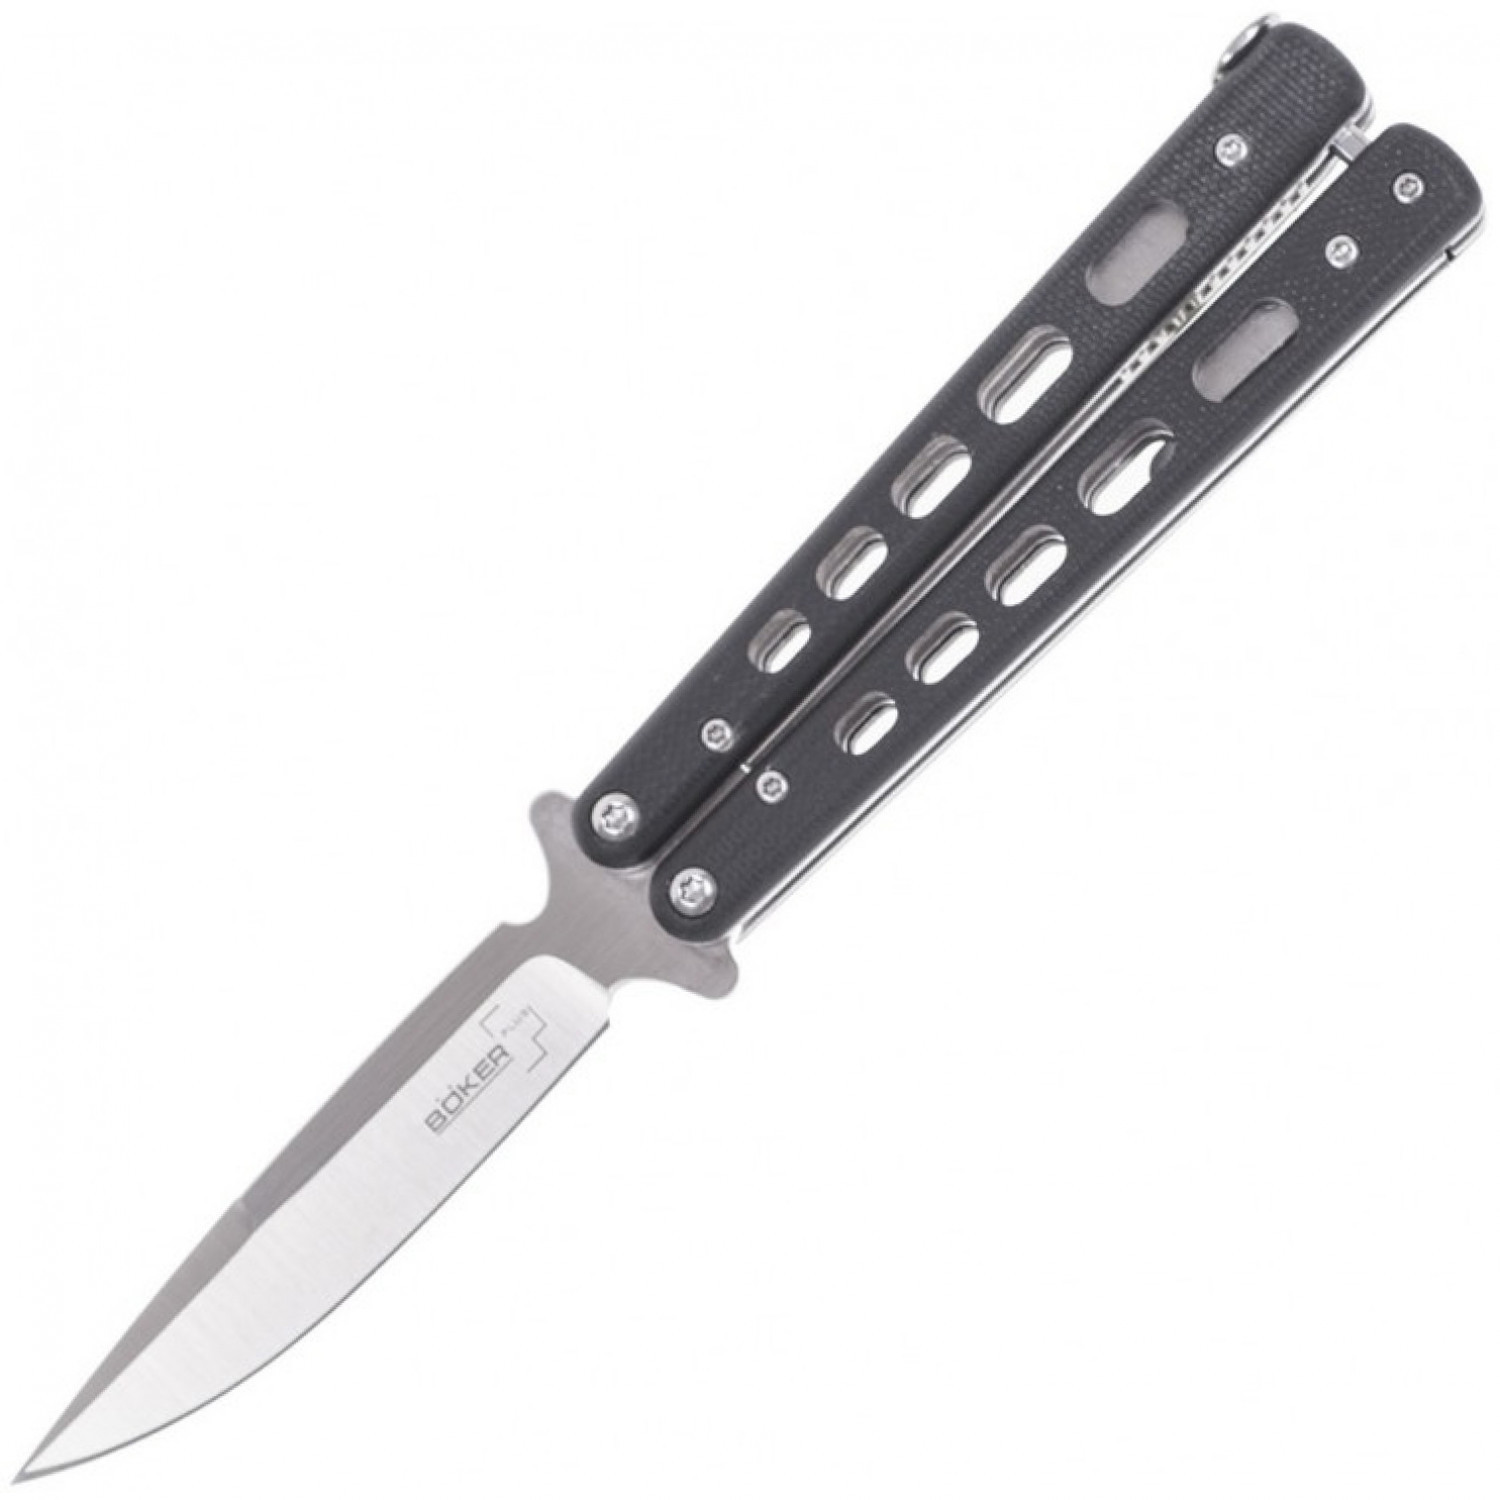 Складной нож Boker Plus Balisong 06EX002, Satin Finish 440C Steel, рукоять стеклотекстолит G-10, чёрный - фото 9